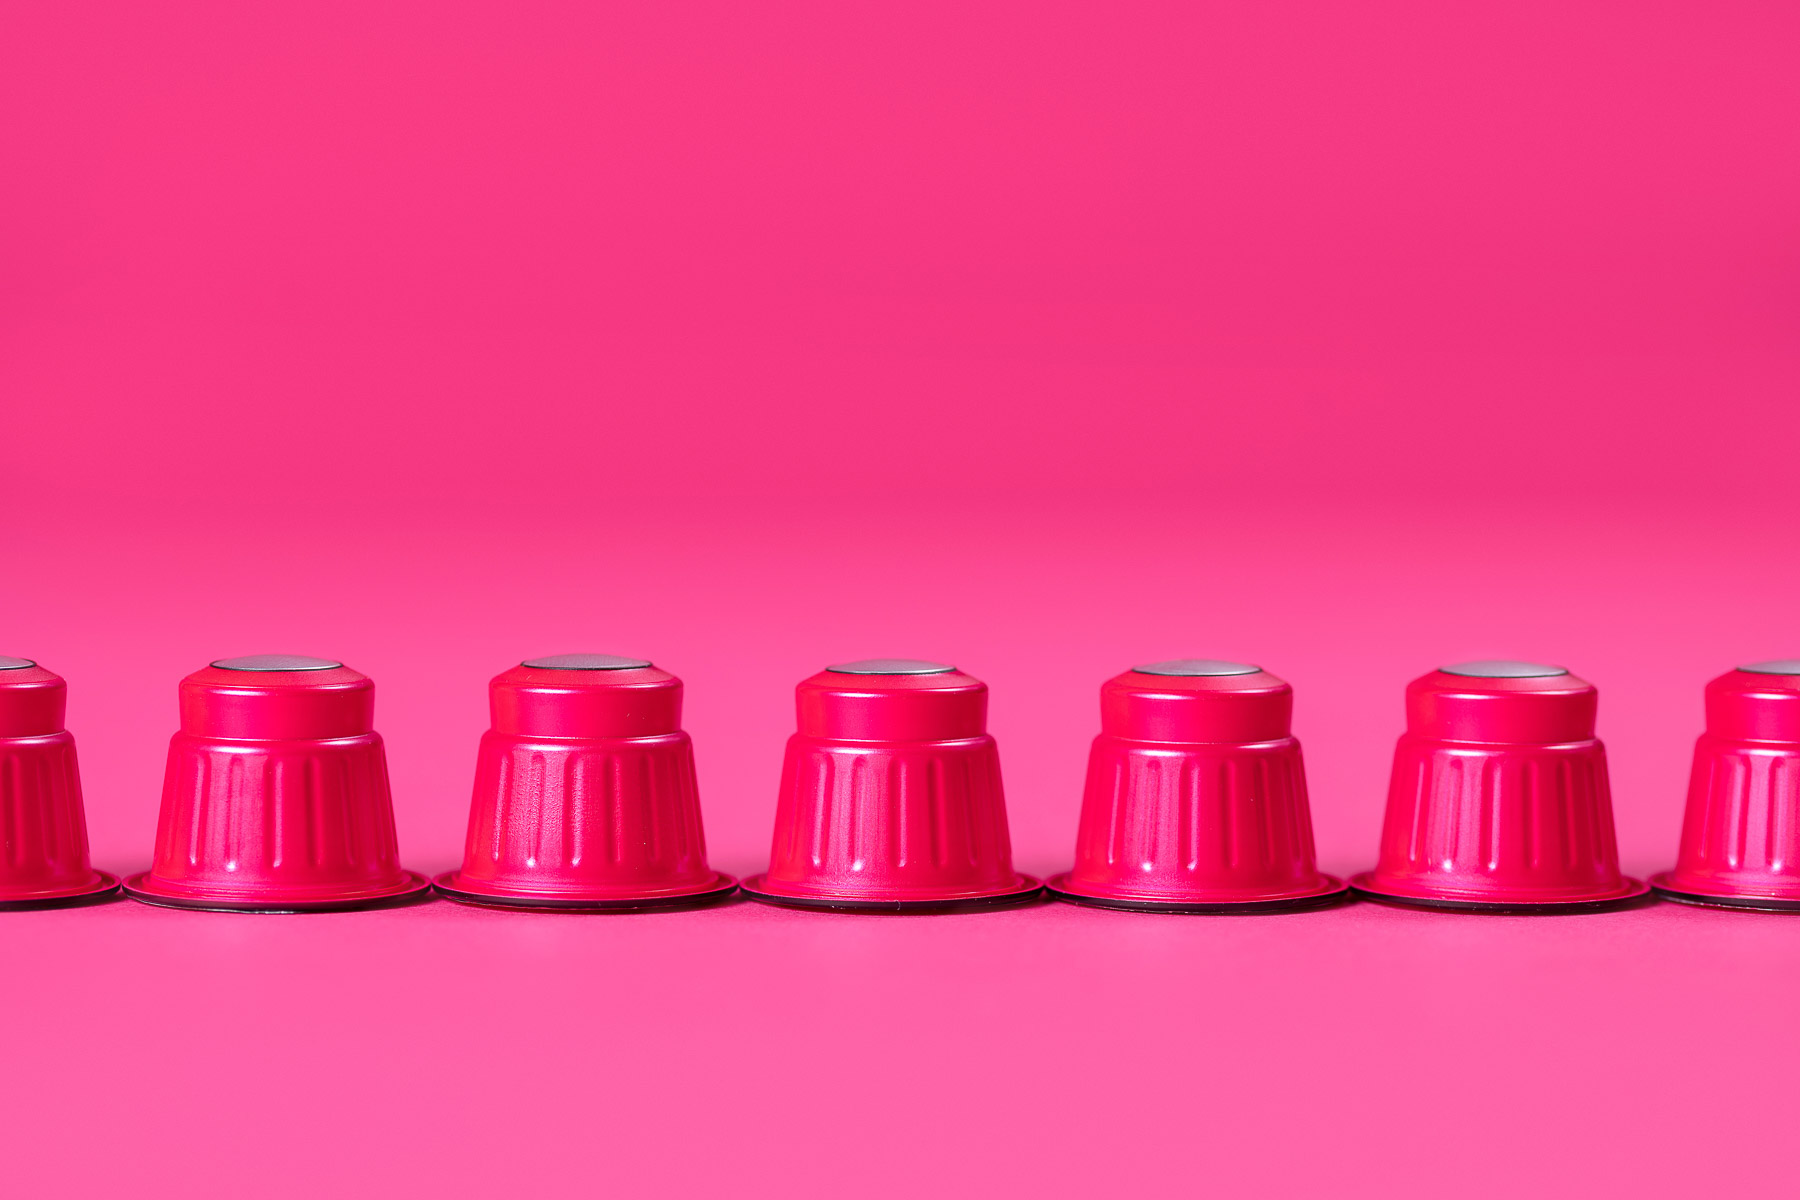 Rote Kaffekapseln in einer Reihe fotografiert, in einer pinken Umgebung.